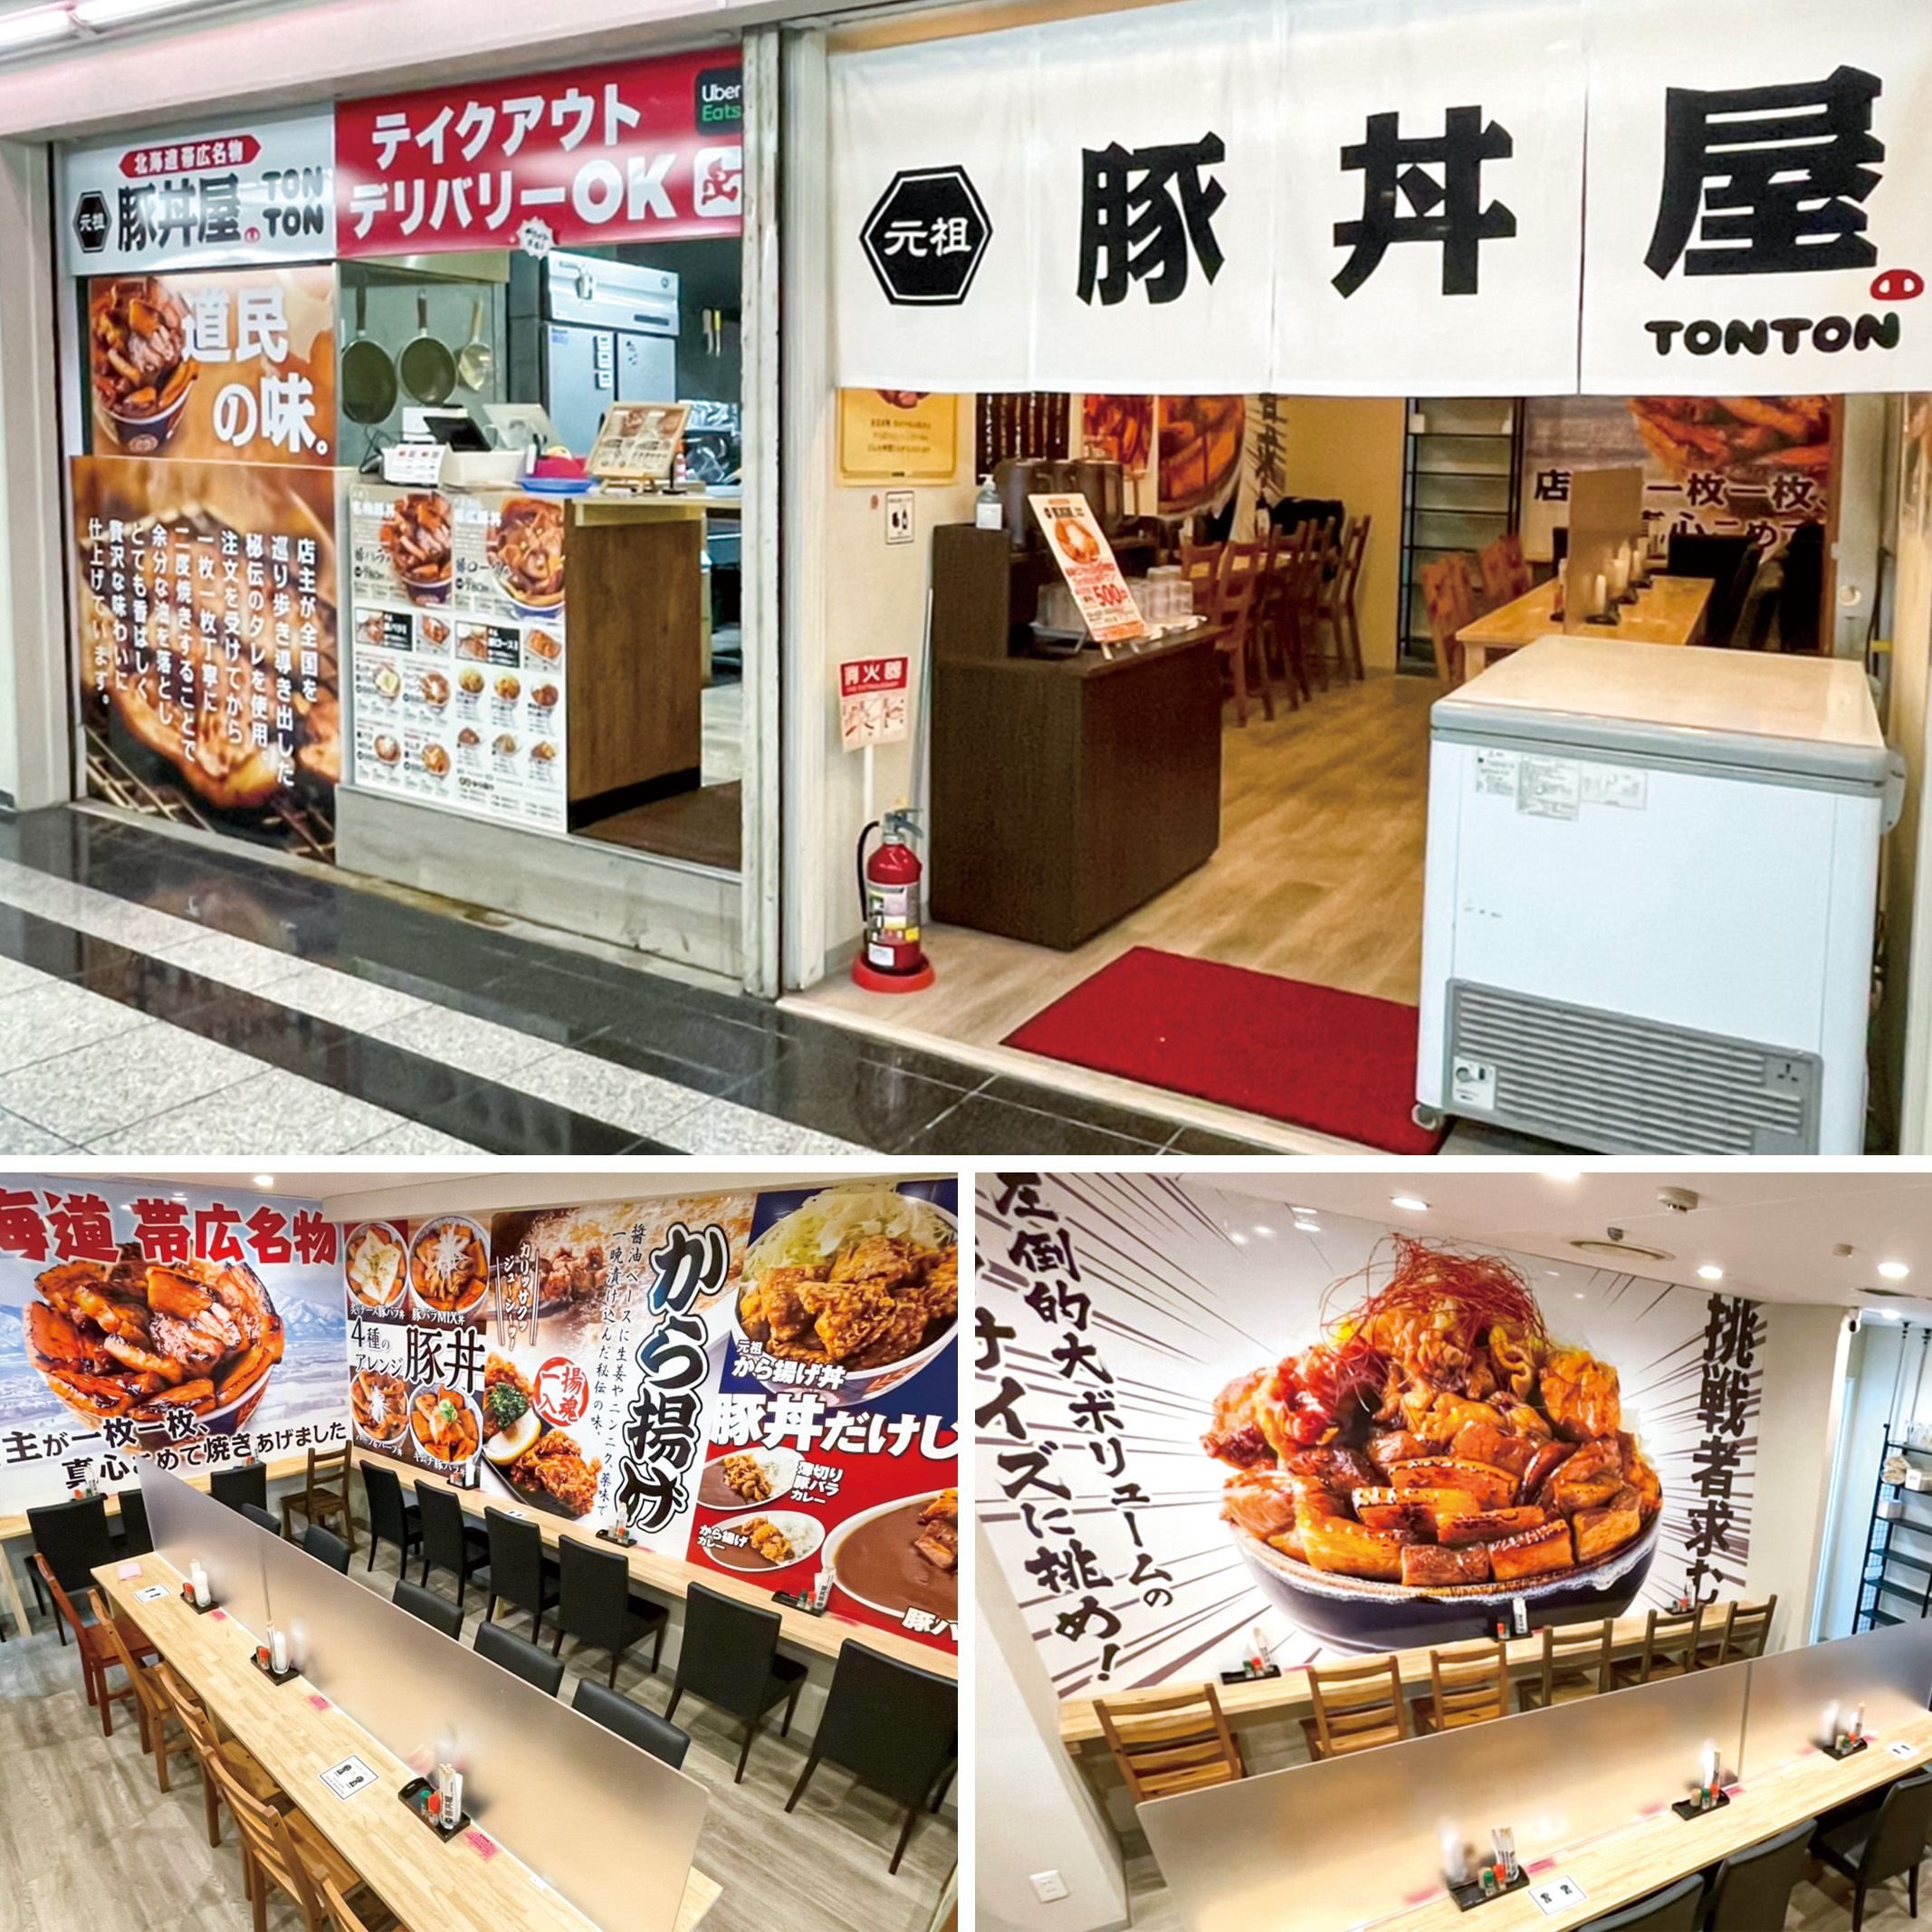 元祖豚丼屋TONTON 船場センタービル10号館店